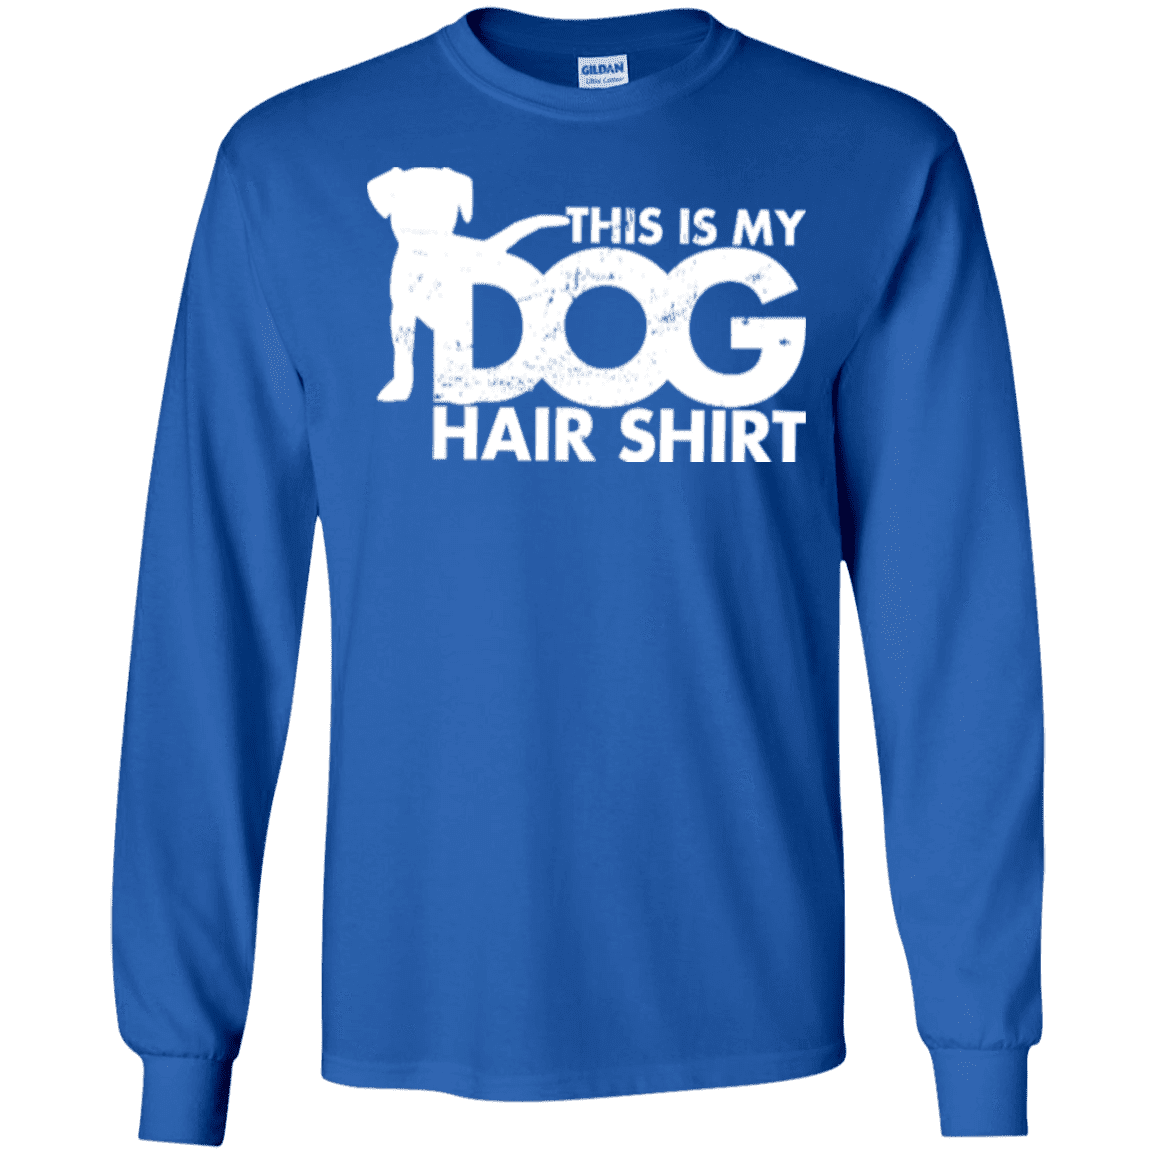 Dog Hair Shirt - Long Sleeve T Shirt.